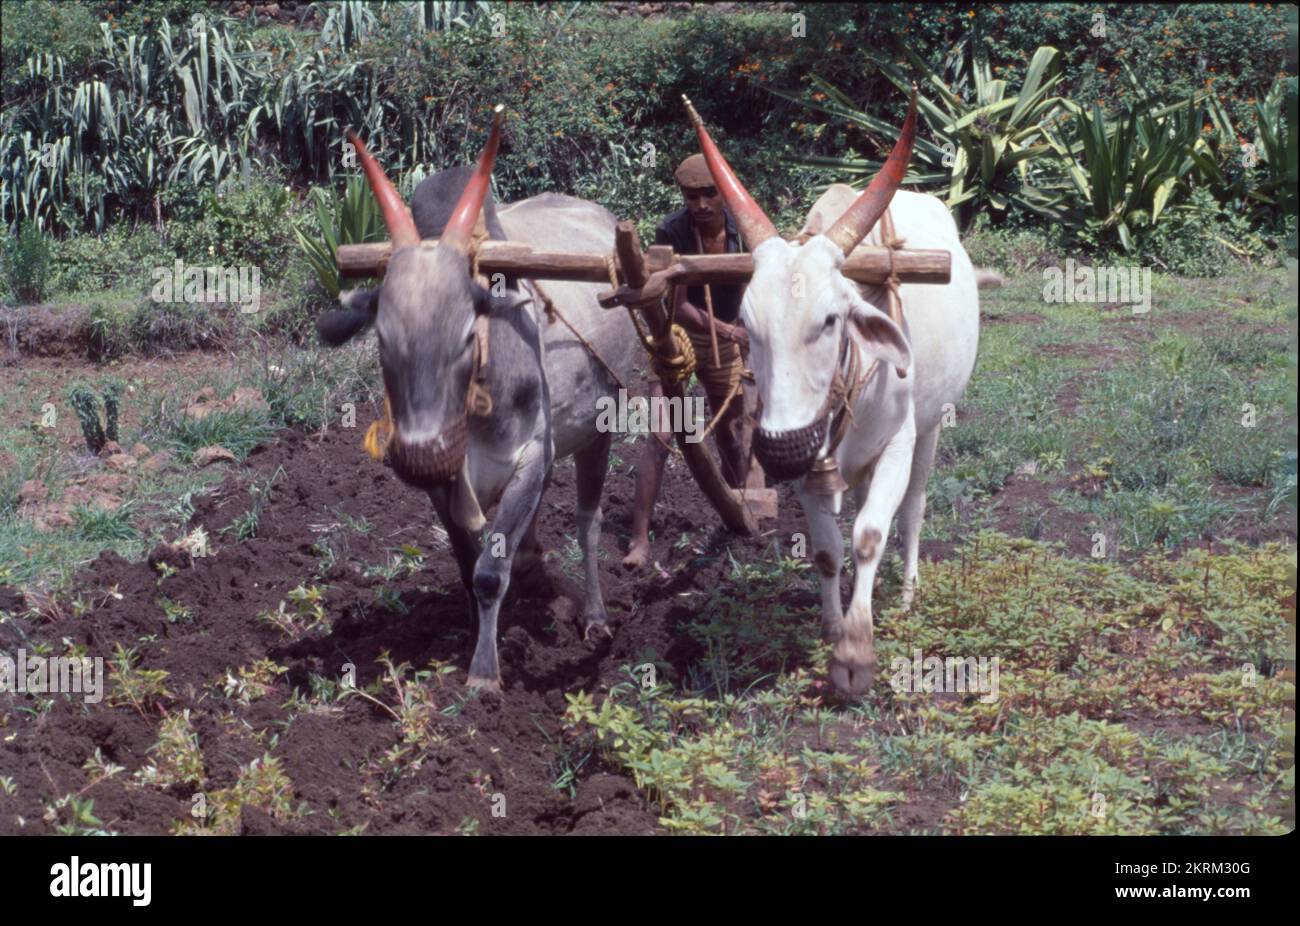 Traditionnellement, les agriculteurs utilisent le taureau pour labourer le champ à l'aide d'animaux tels que les taureaux. C'est le style indien traditionnel, la traction du sillon se fait en utilisant des taureaux. Le labourage et le labourage sont les mêmes. Banque D'Images